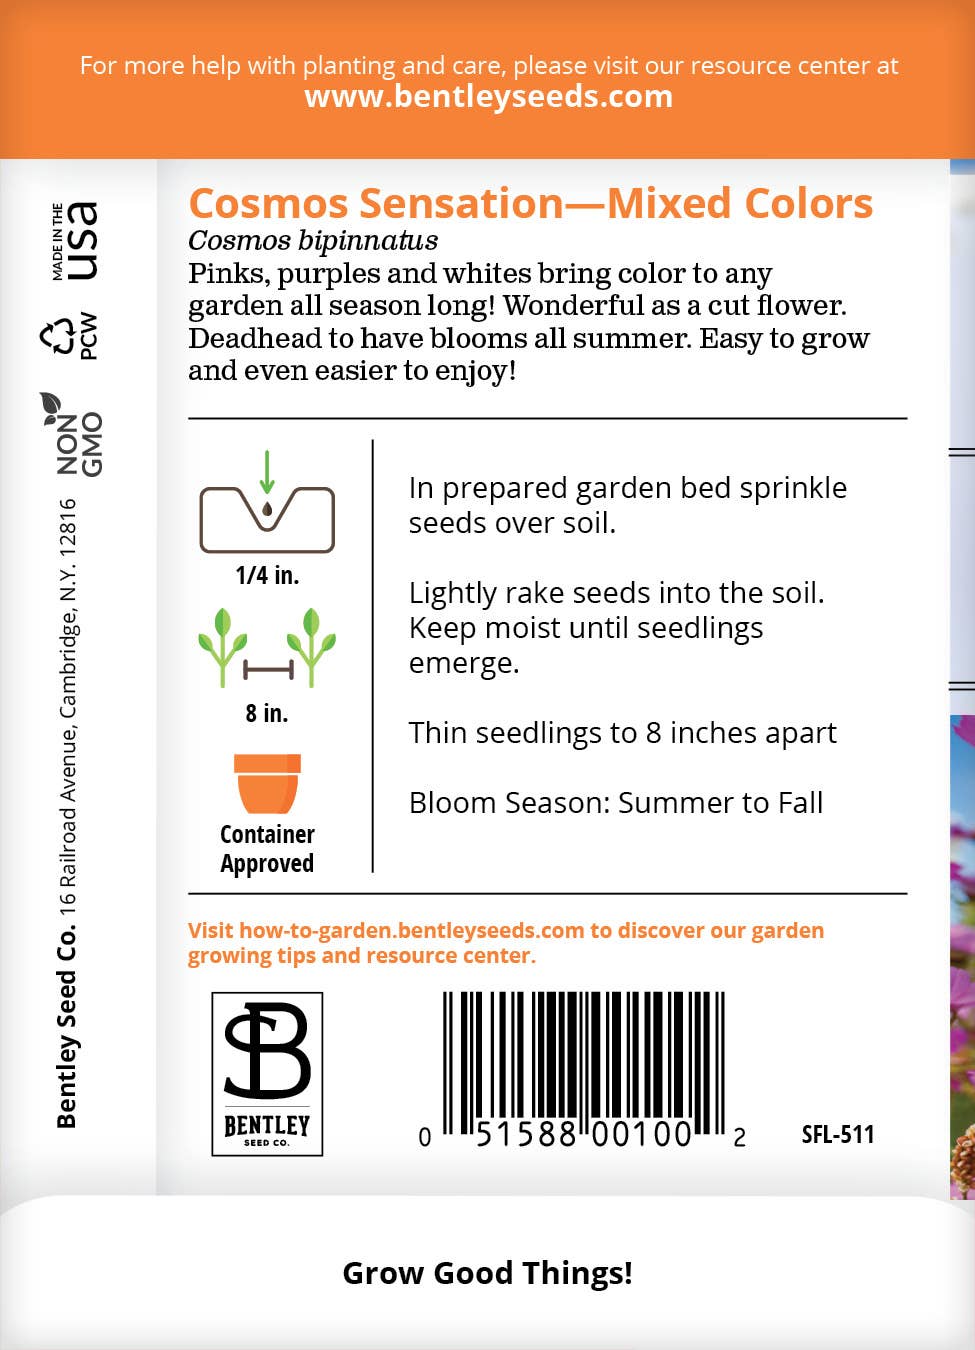 Bentley Seed Co. - Cosmos Sensation Mixed Colors-Cosmos Bipinnatus